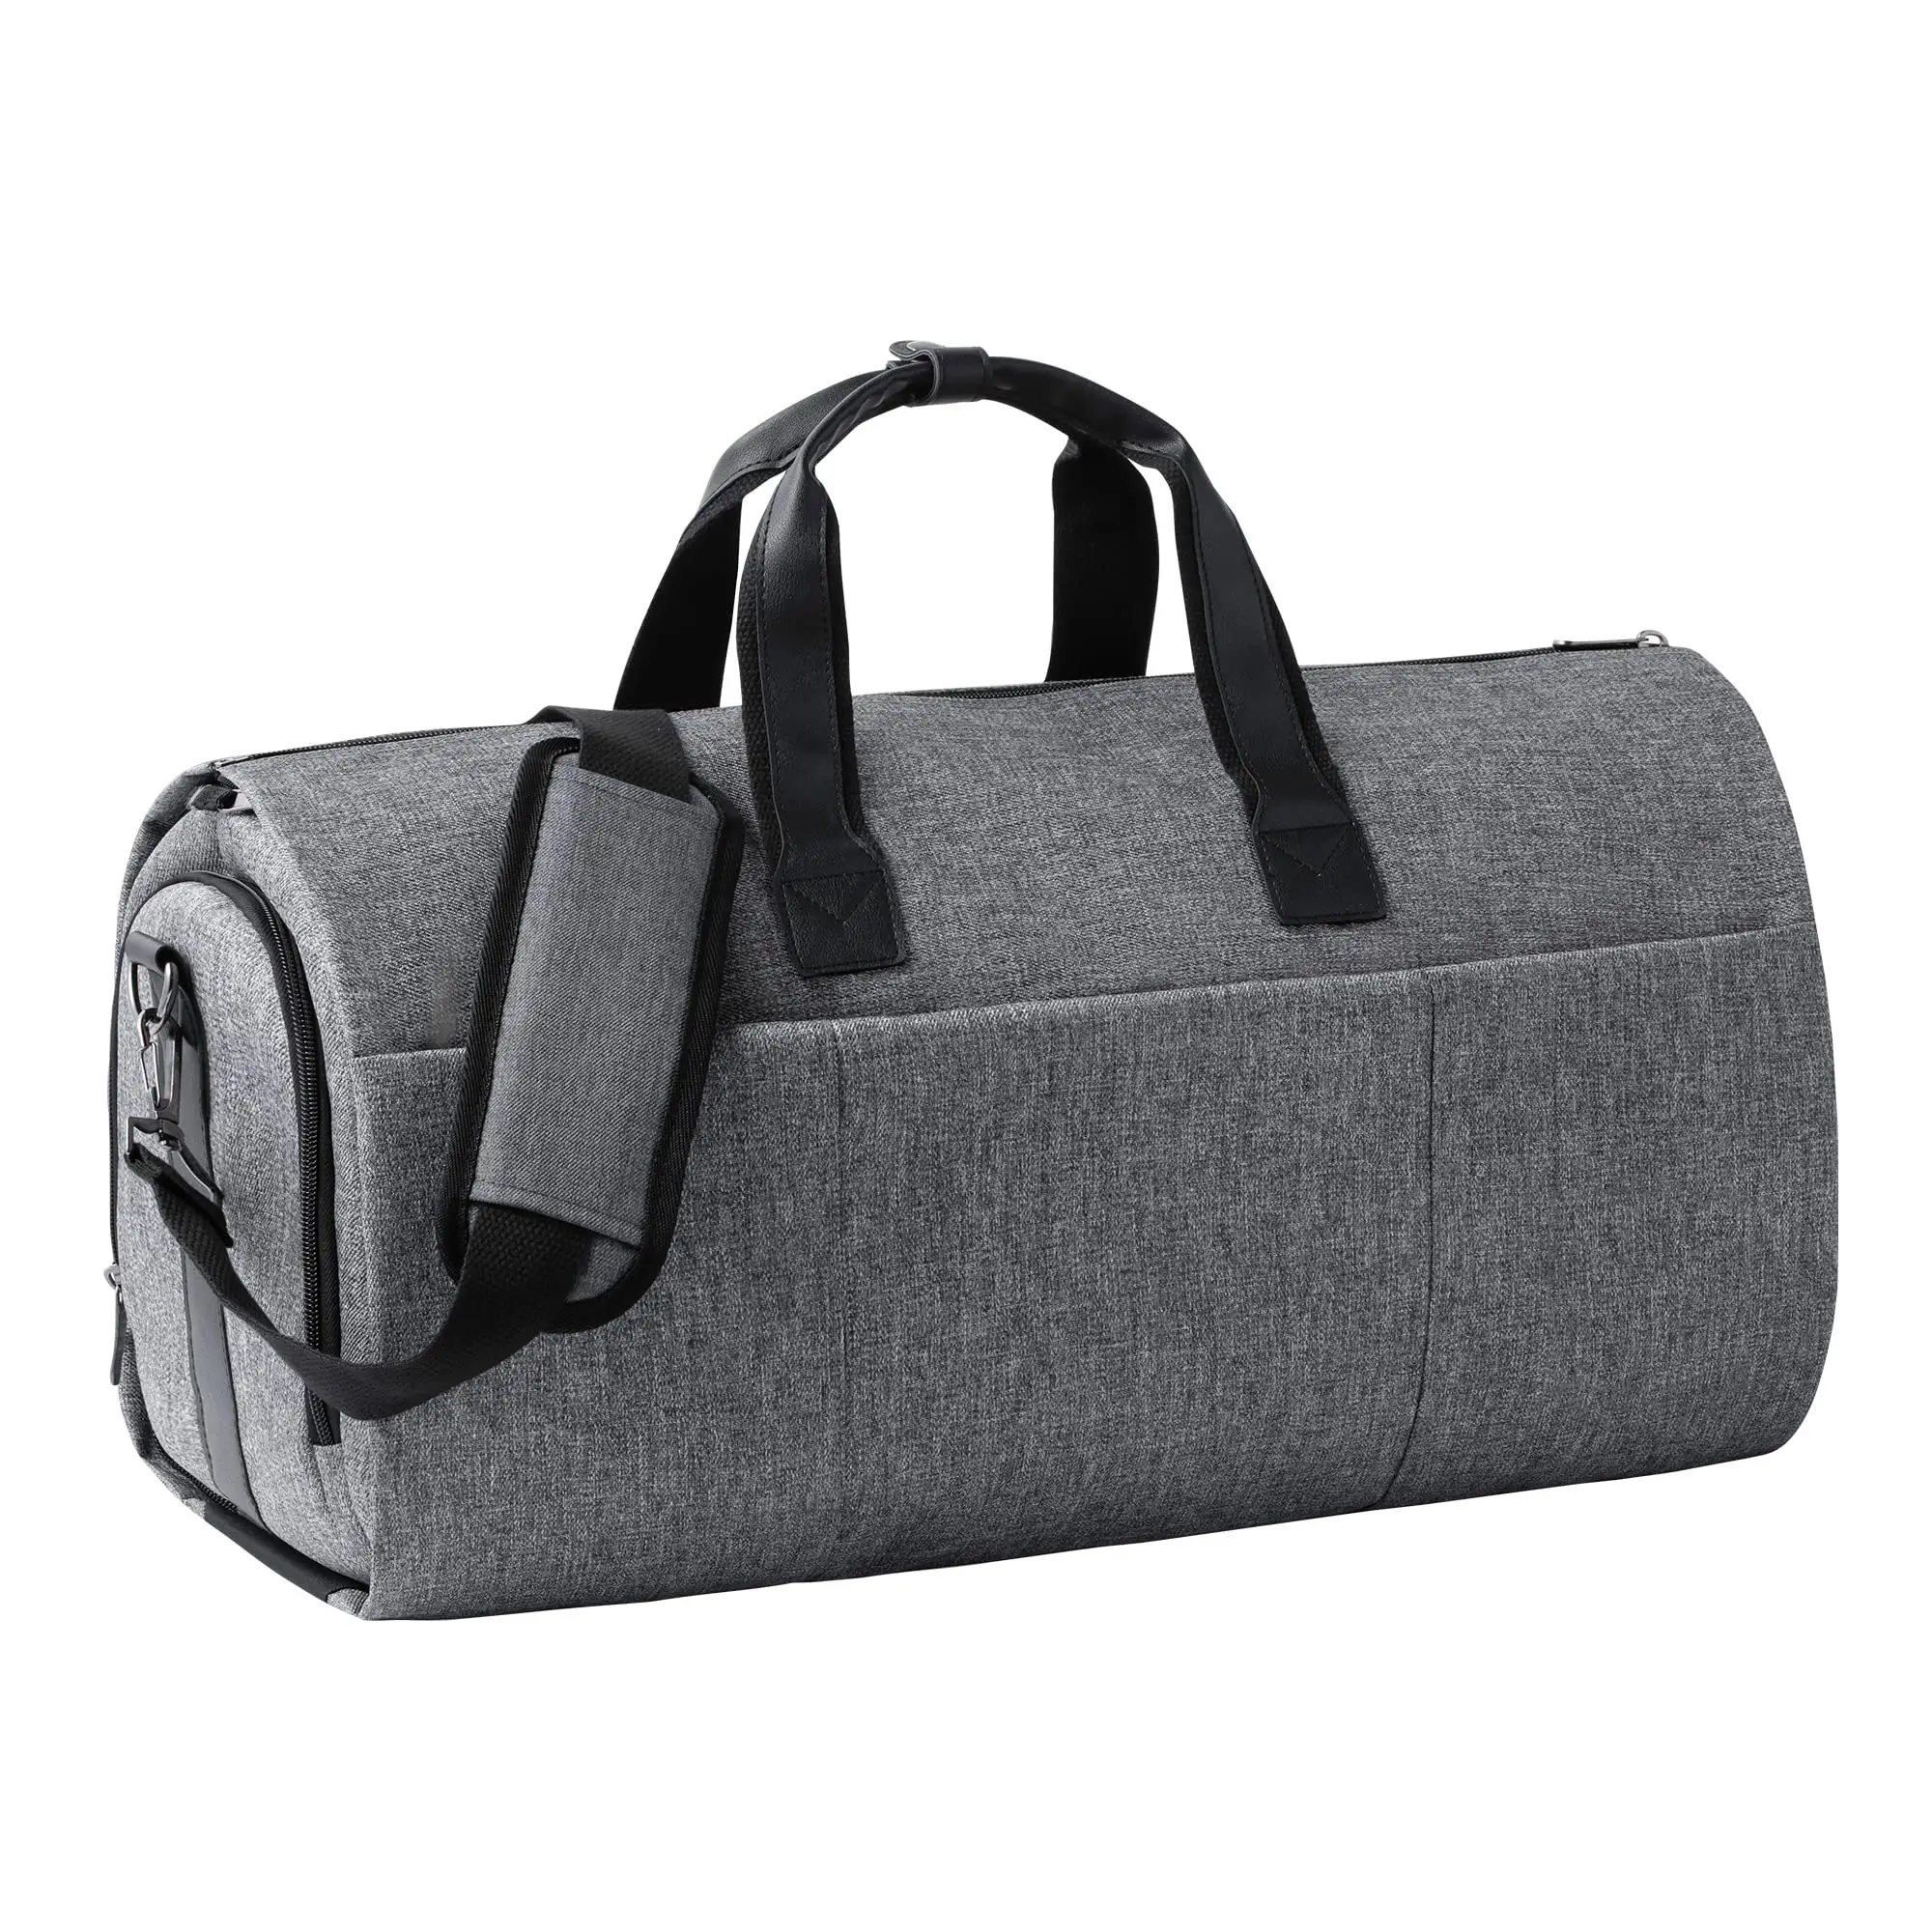 Yuhong Factory personalizado nuevo diseño 2 en 1 Convertible bolsa de viaje bolsa de ropa